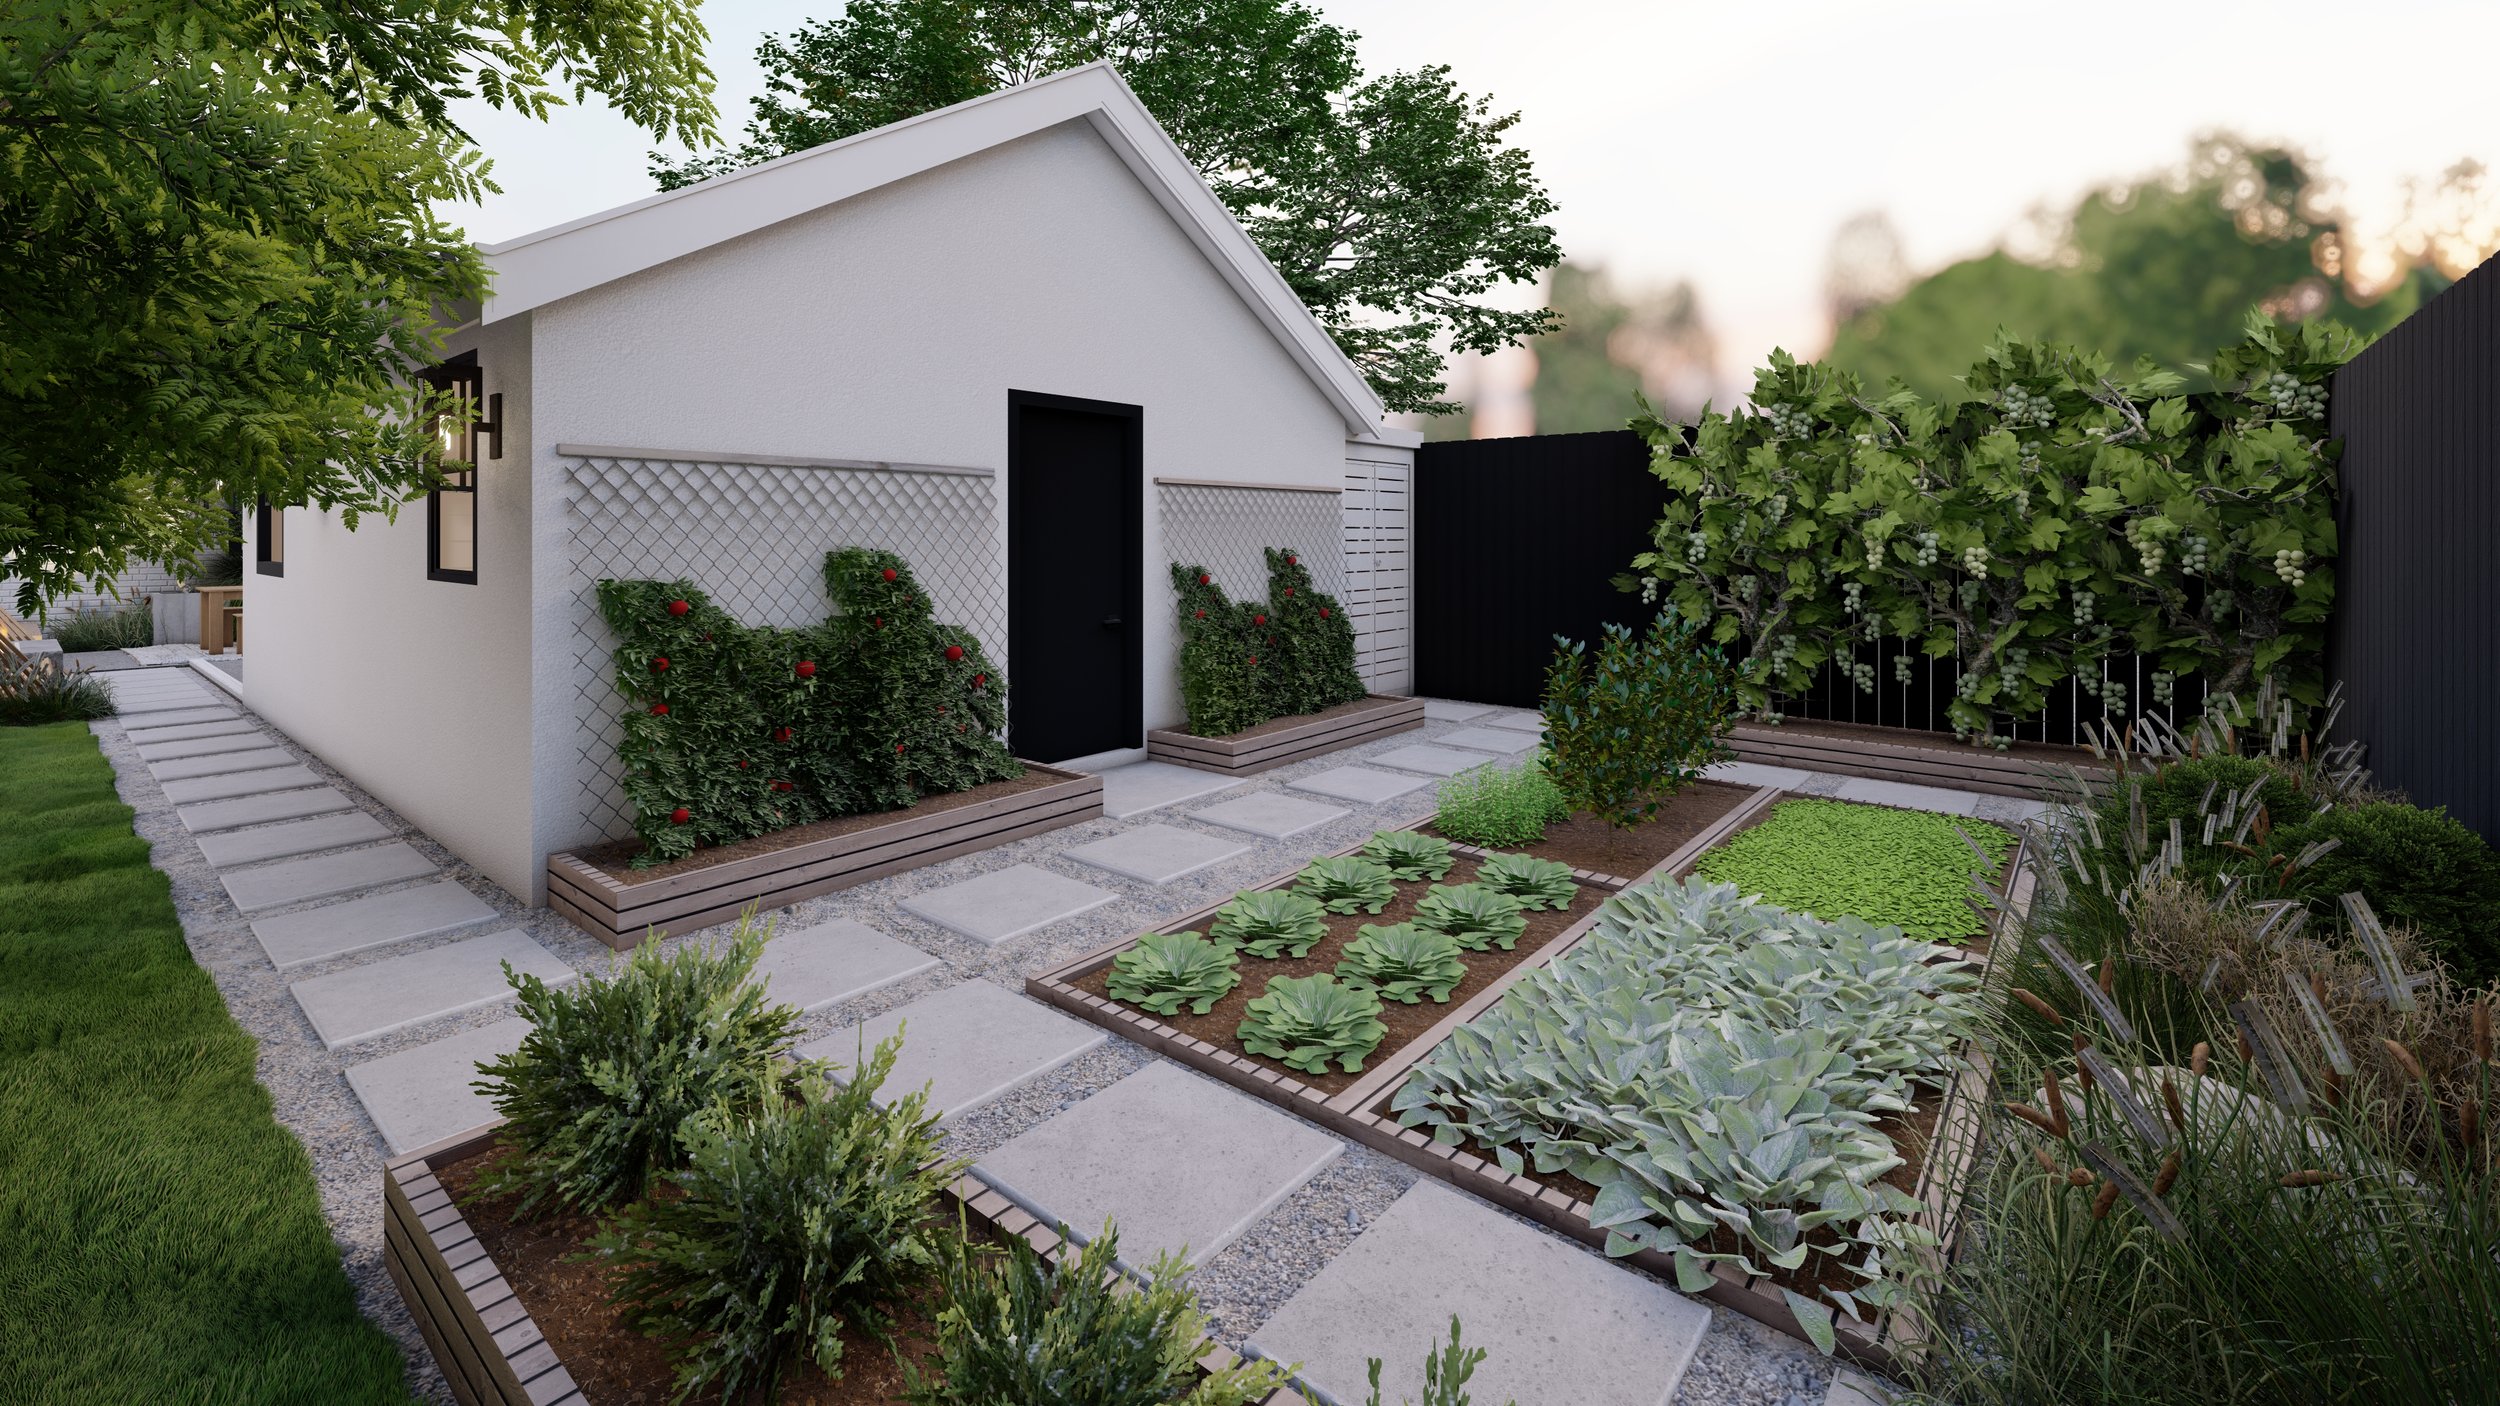 Fenced social backyard with trellises and edible garden